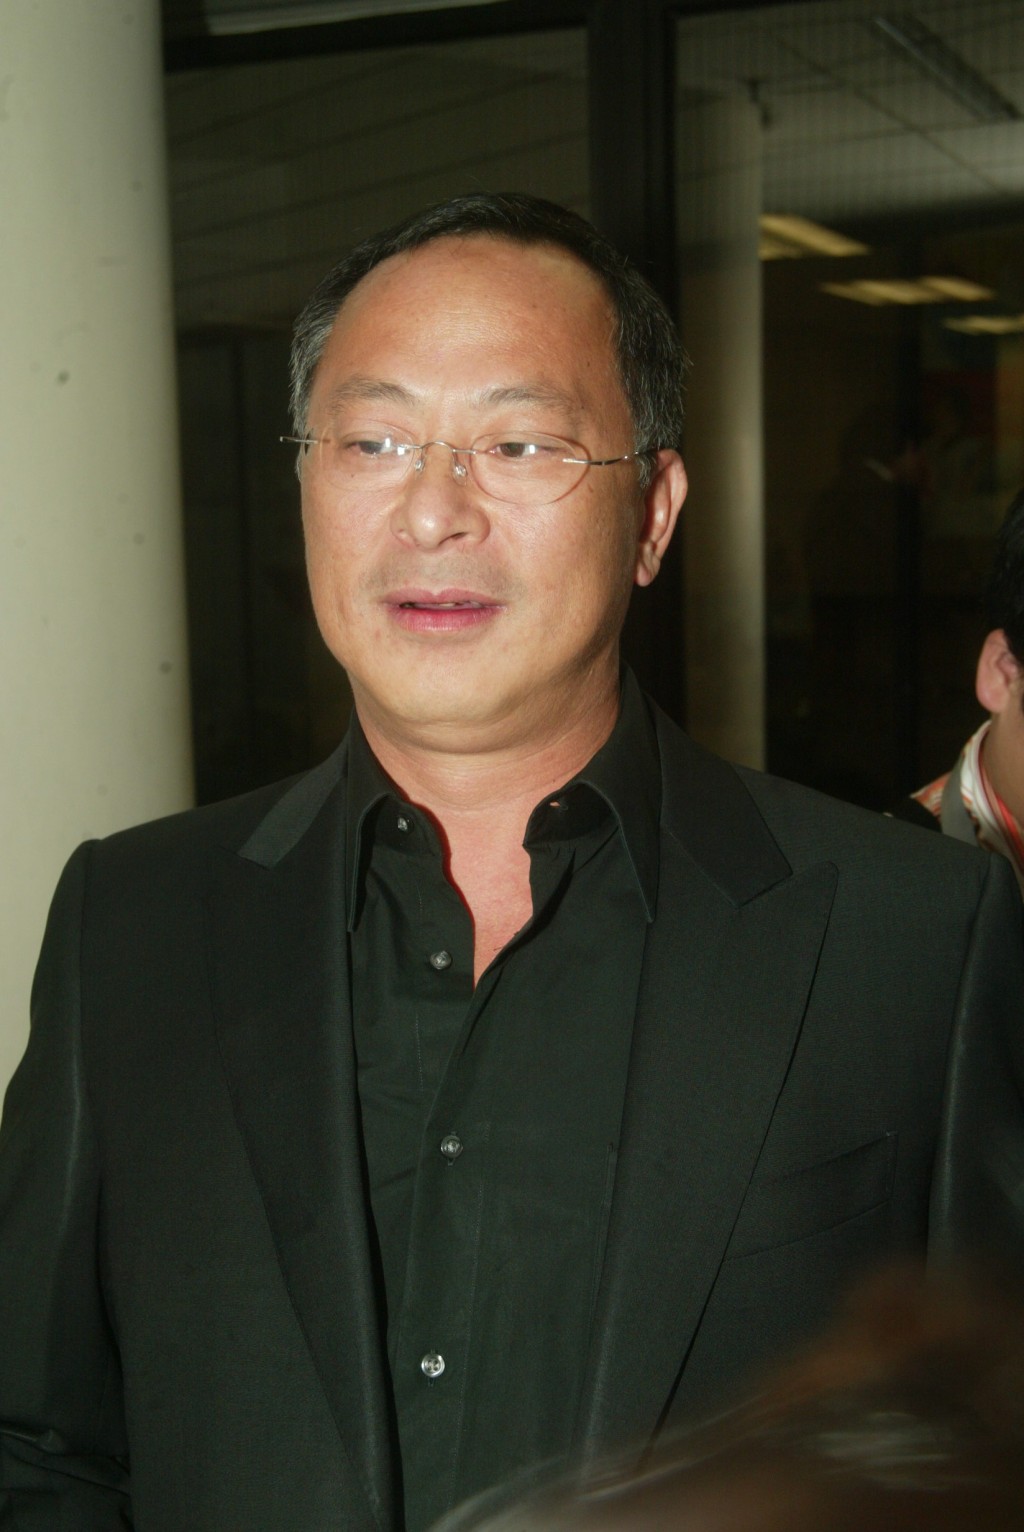 68岁的杜琪峯是香港电影殿堂级导演之一。